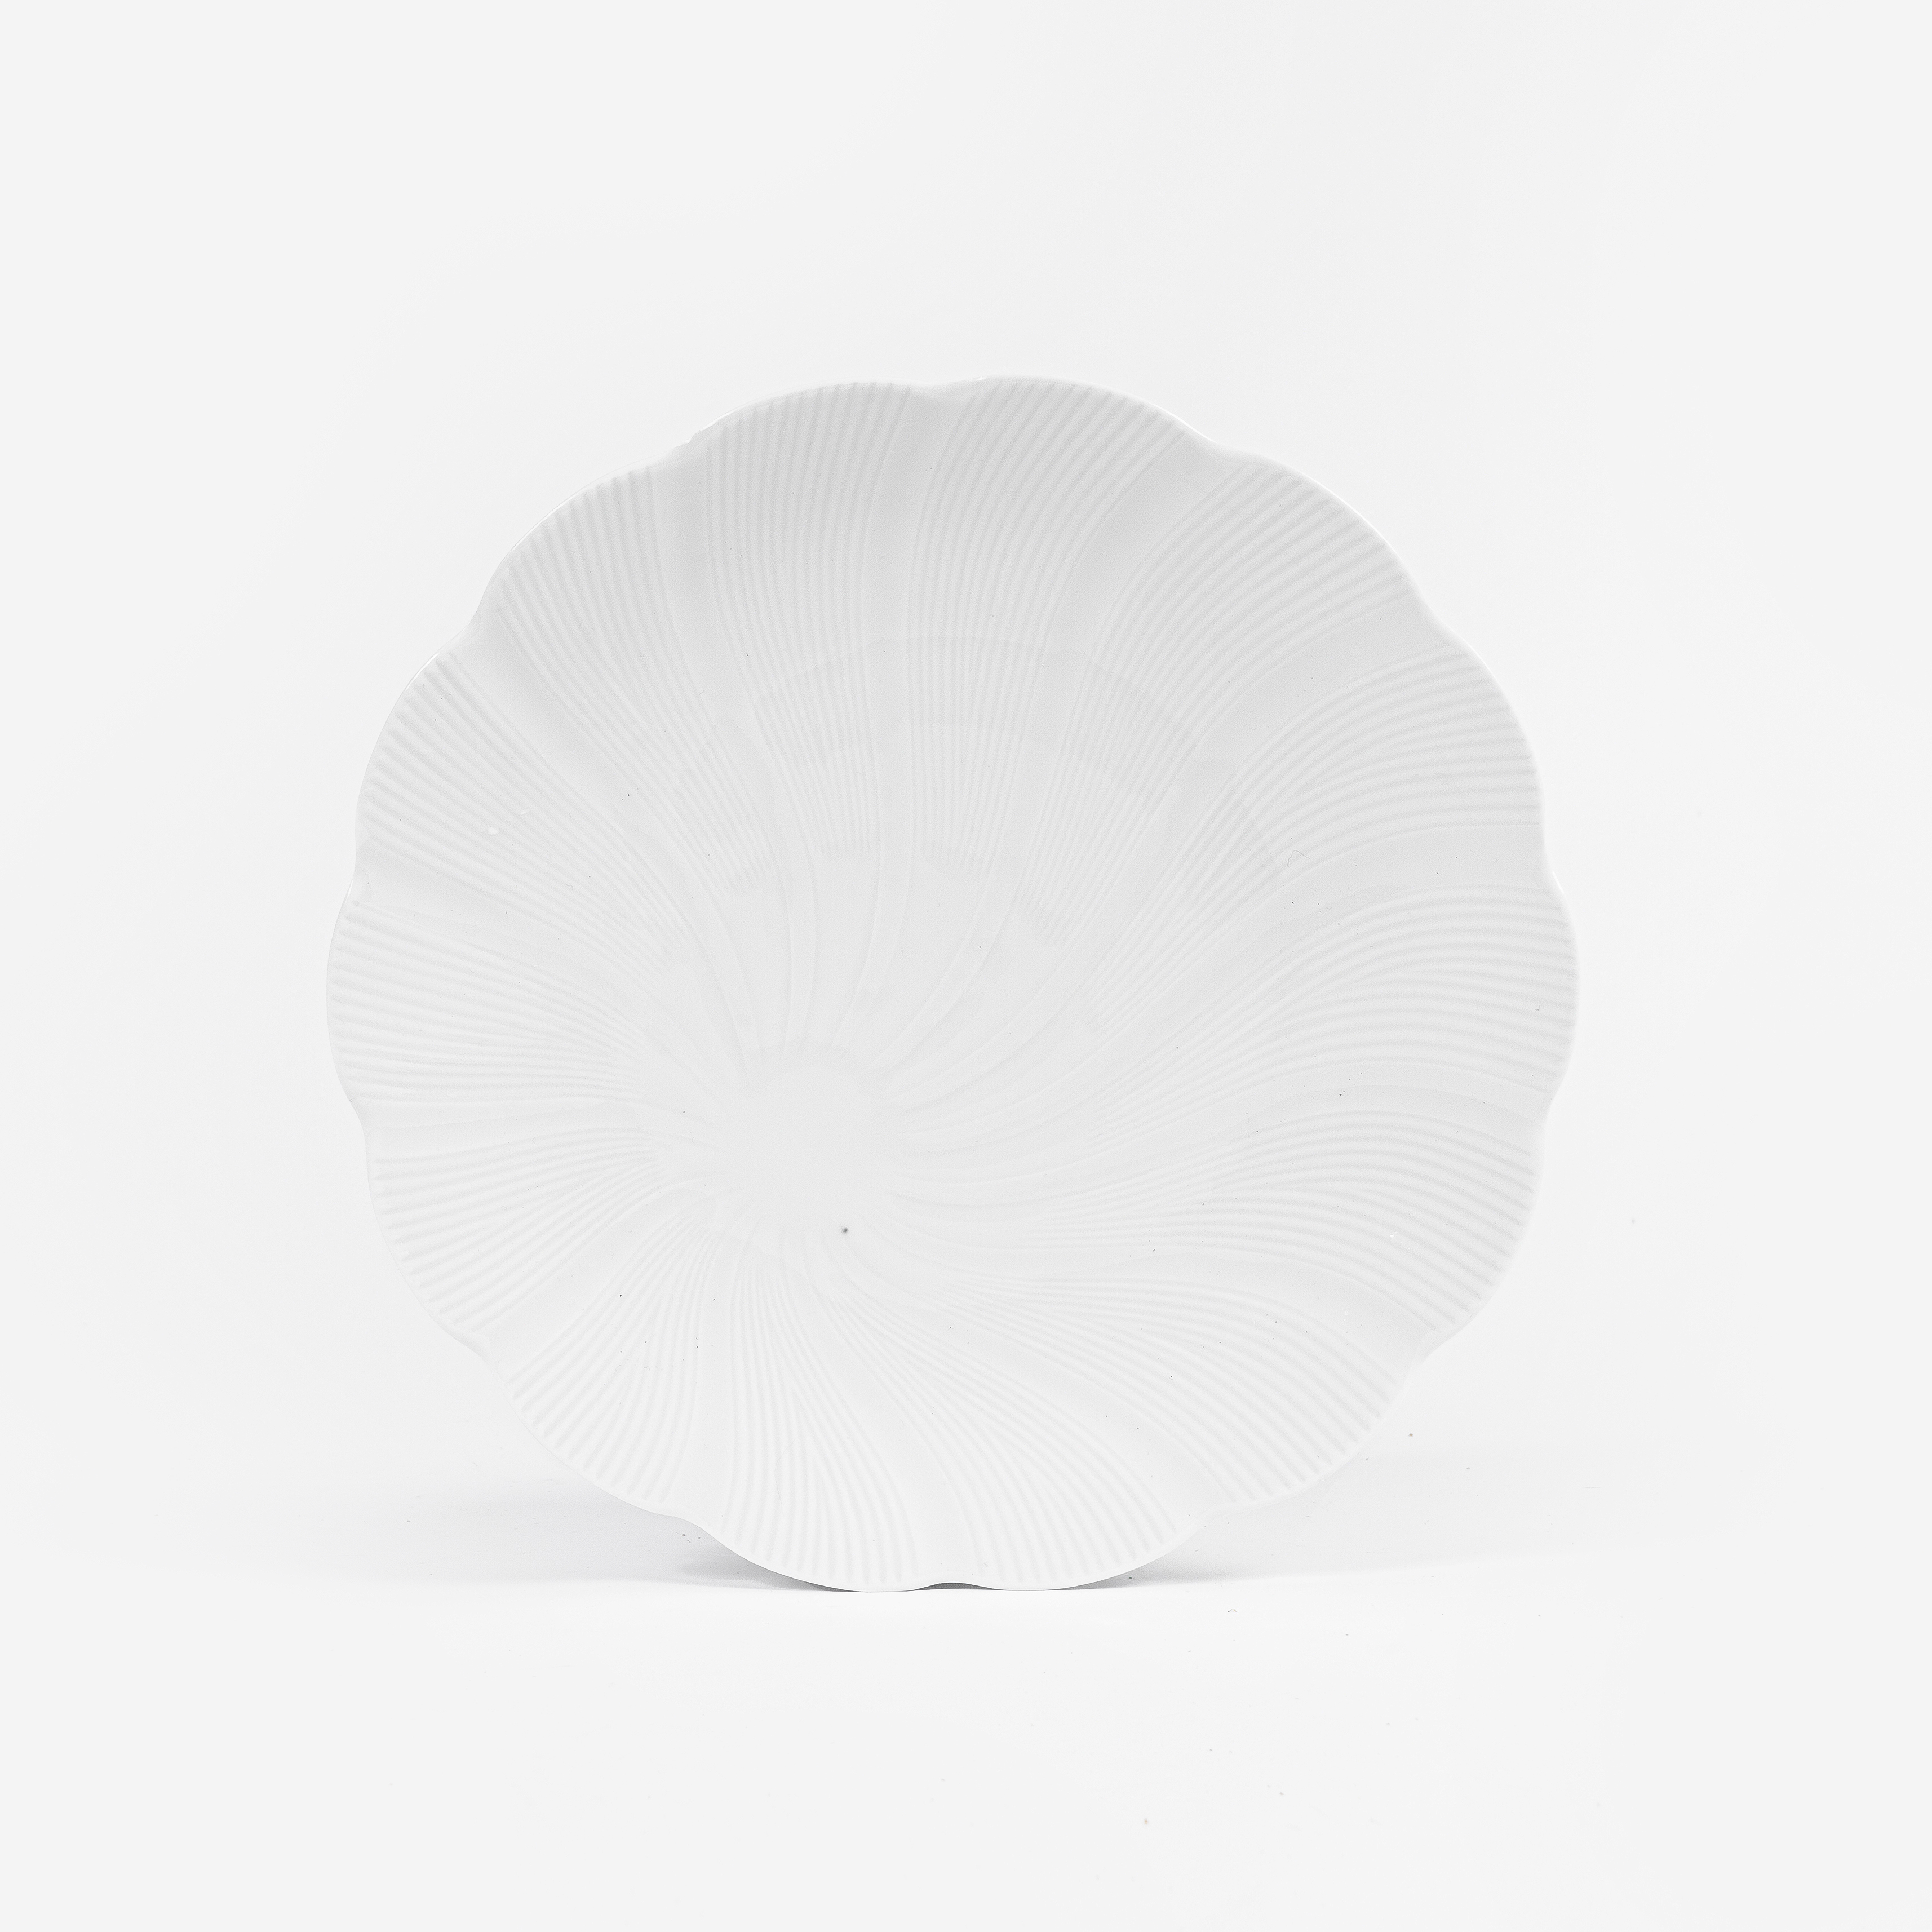 L'assiette plate en porcelaine Blanche - Tahiti